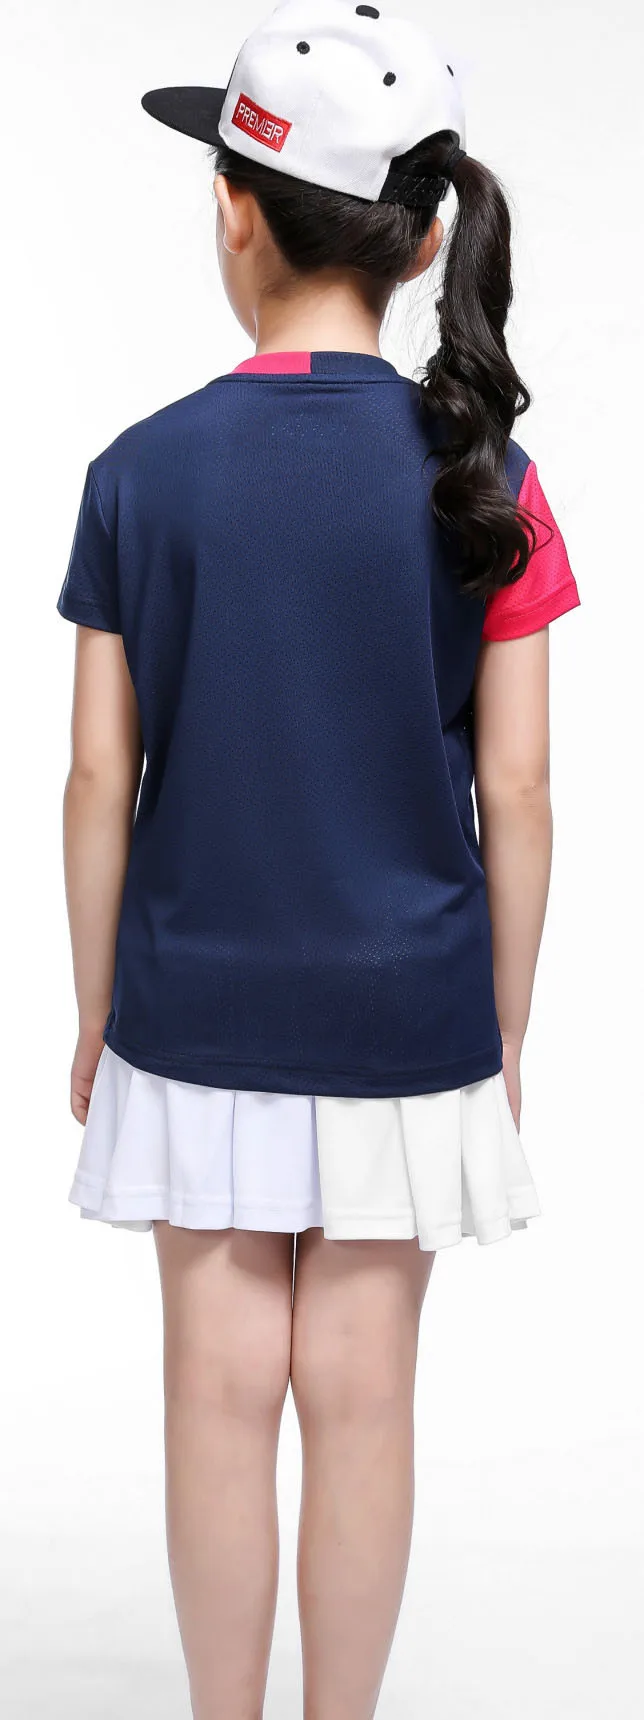 Настольный костюм для тенниса детские юбки для девочек tenis masculino полиэстер быстросохнущие настольные теннисные майки Детская рубашка для бадминтона костюм XS-3XL